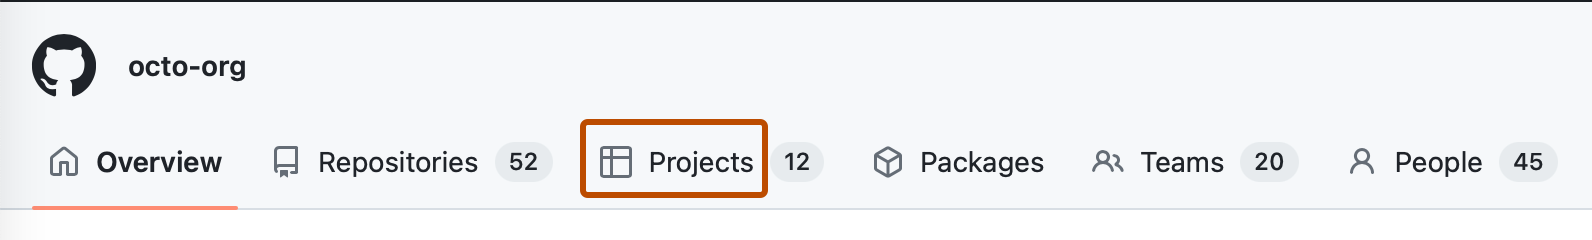 Captura de tela da barra de navegação horizontal de uma organização. Uma guia, rotulada com um ícone de tabela e "Projetos", tem um contorno laranja escuro.